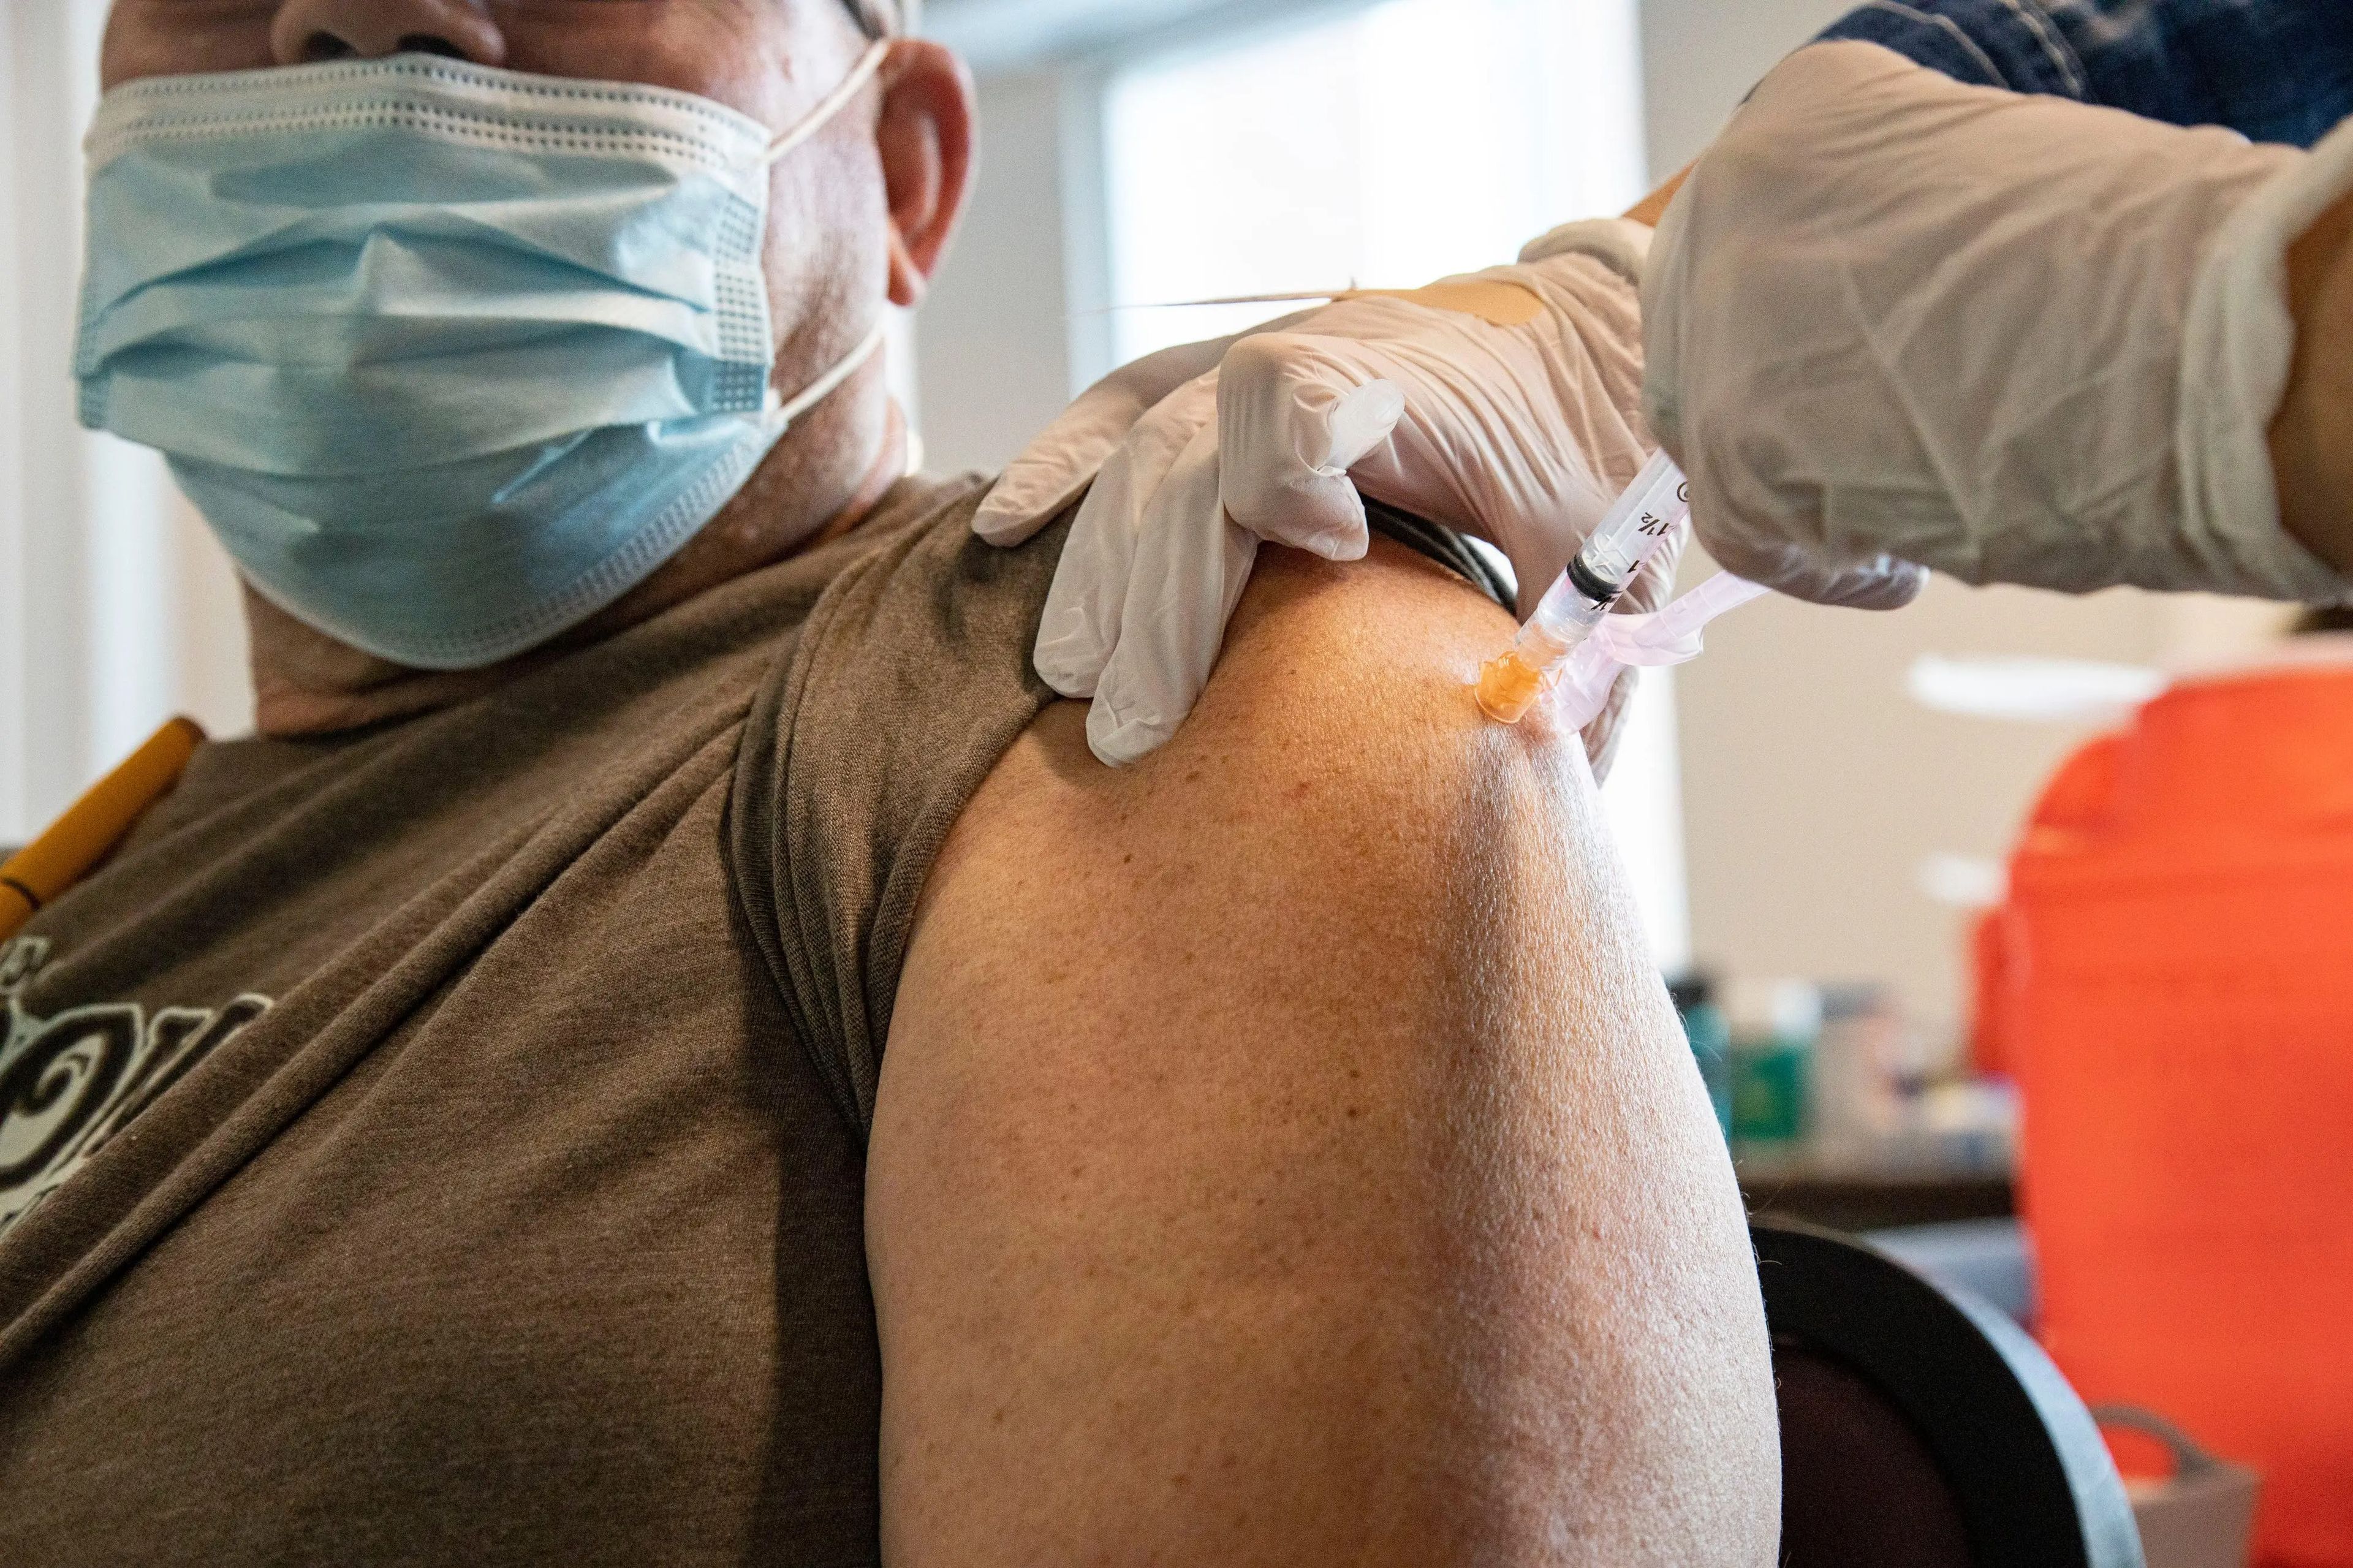 Un hombre recibe una dosis de la vacuna contra el COVID-19.